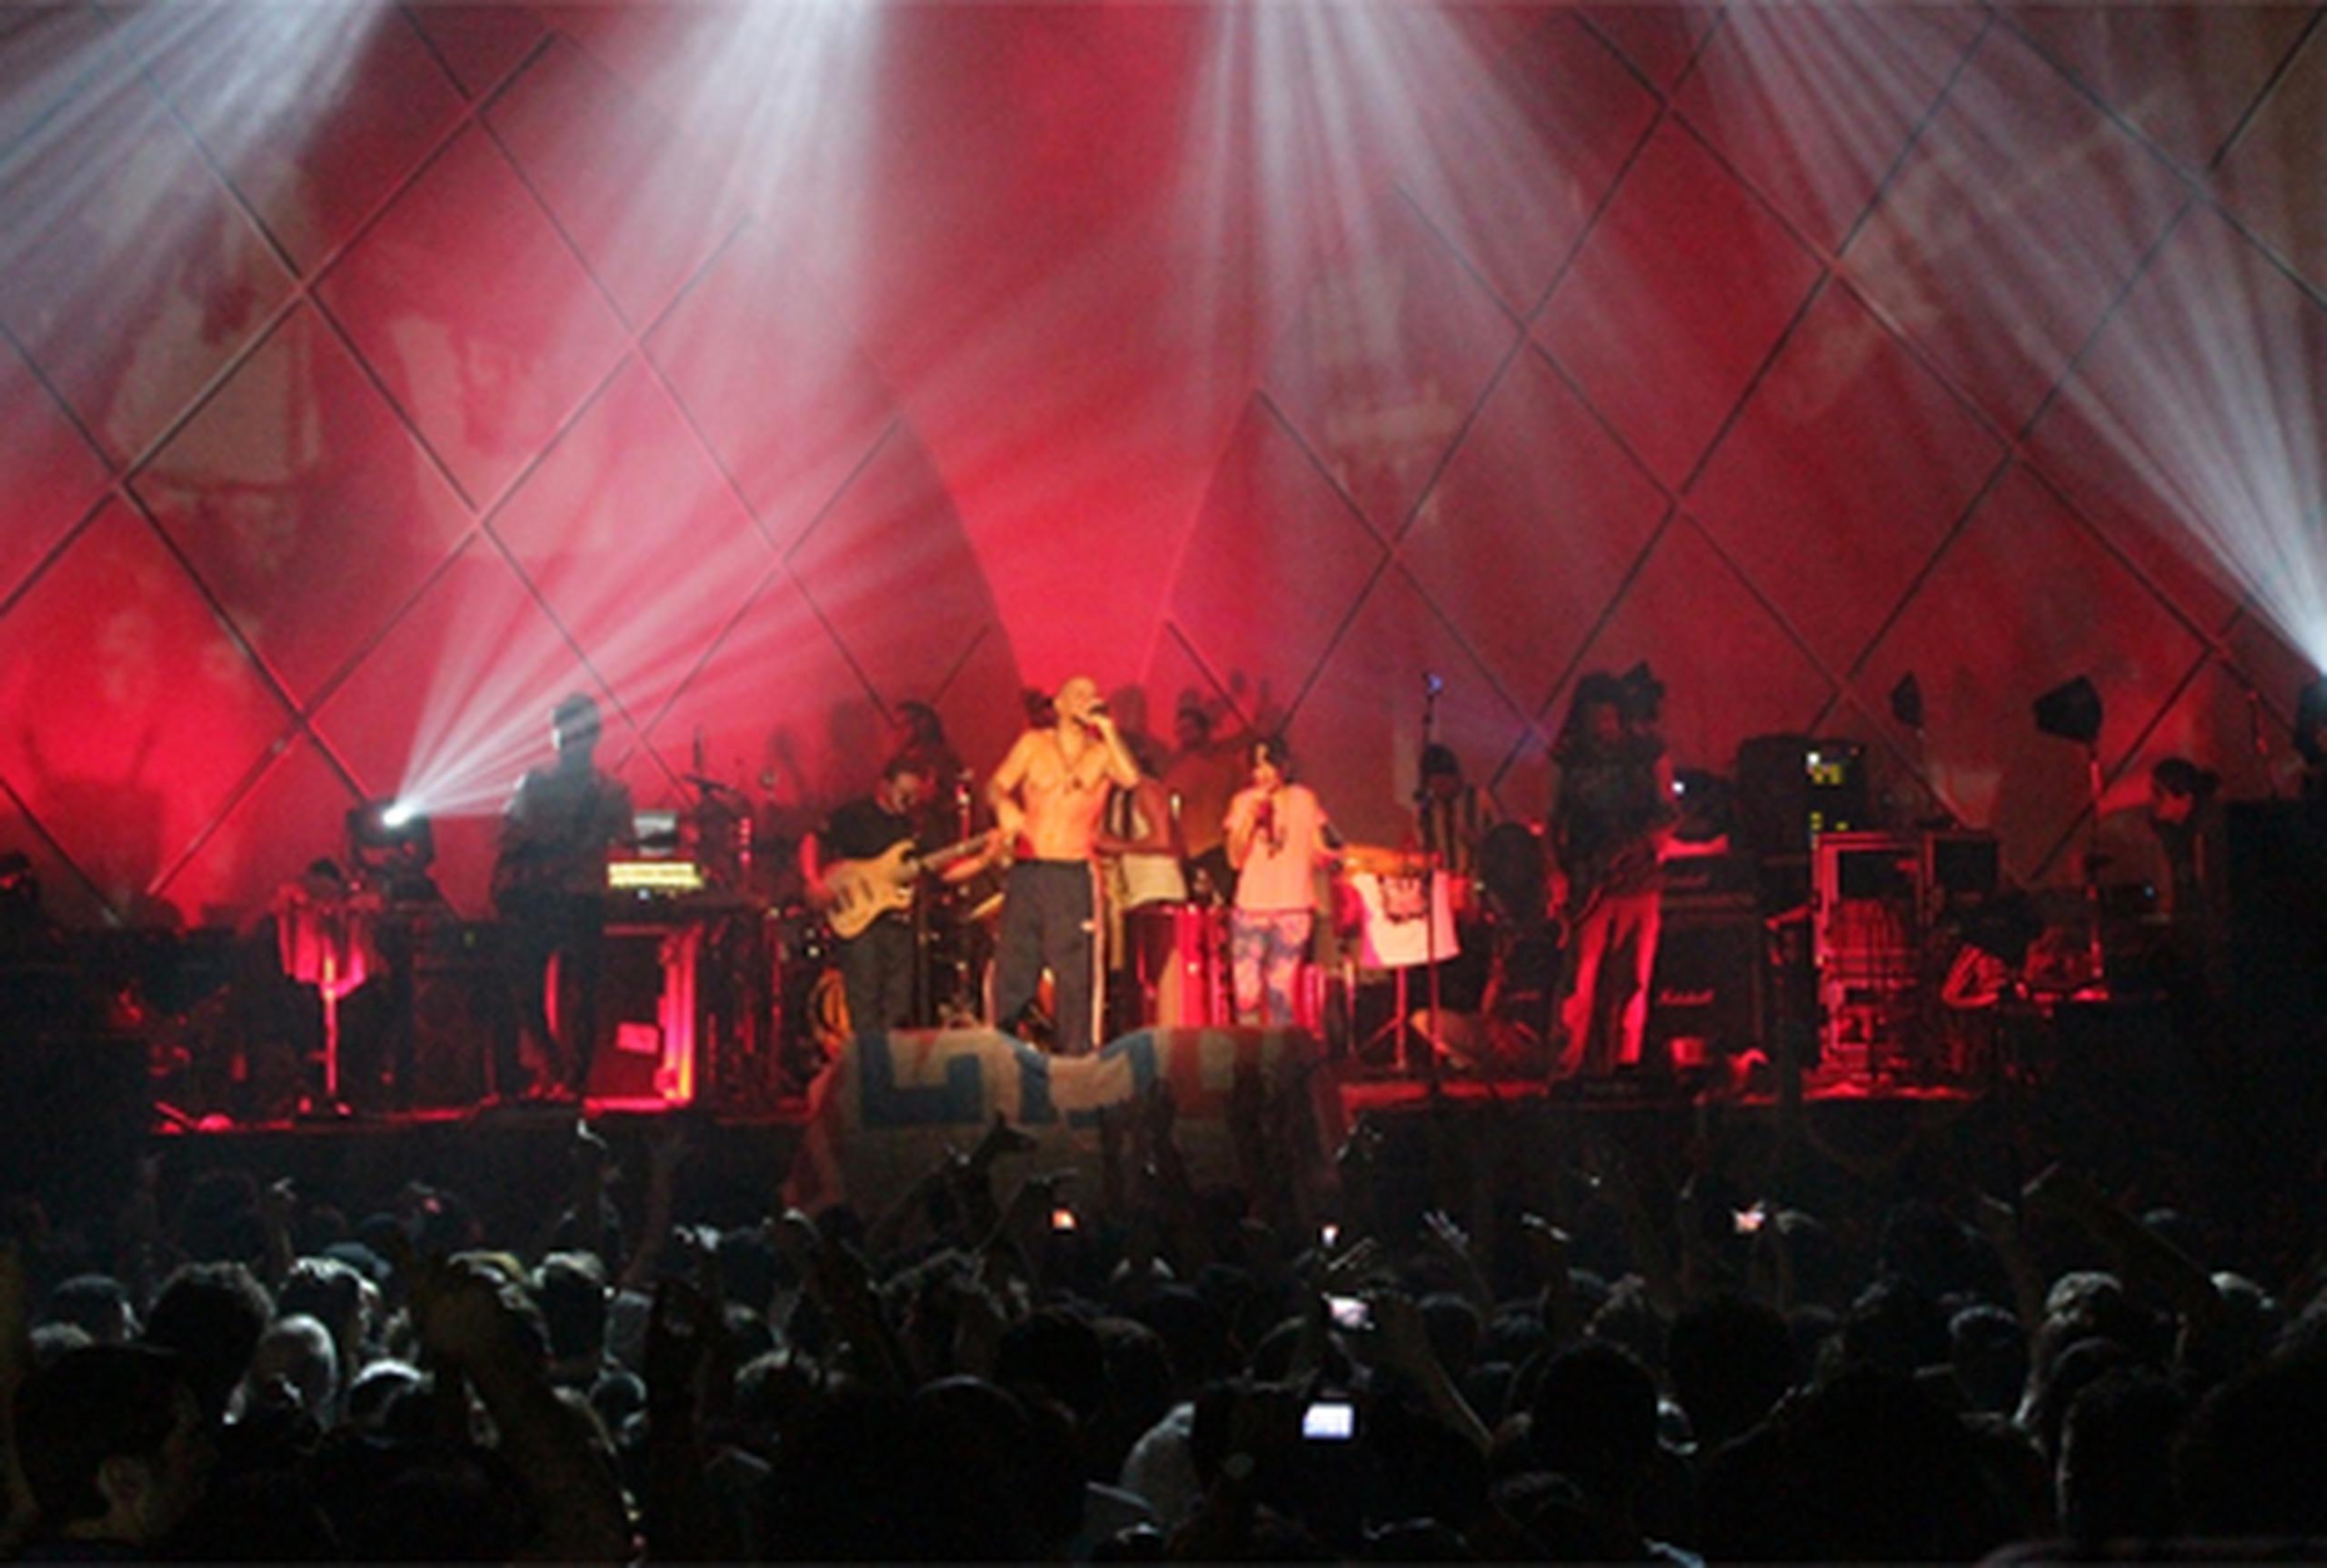 La agrupación boricua abrió el show con Vamo’a portarnos mal, encendiendo a la fanaticada de Sao Paulo. (Suministrada)